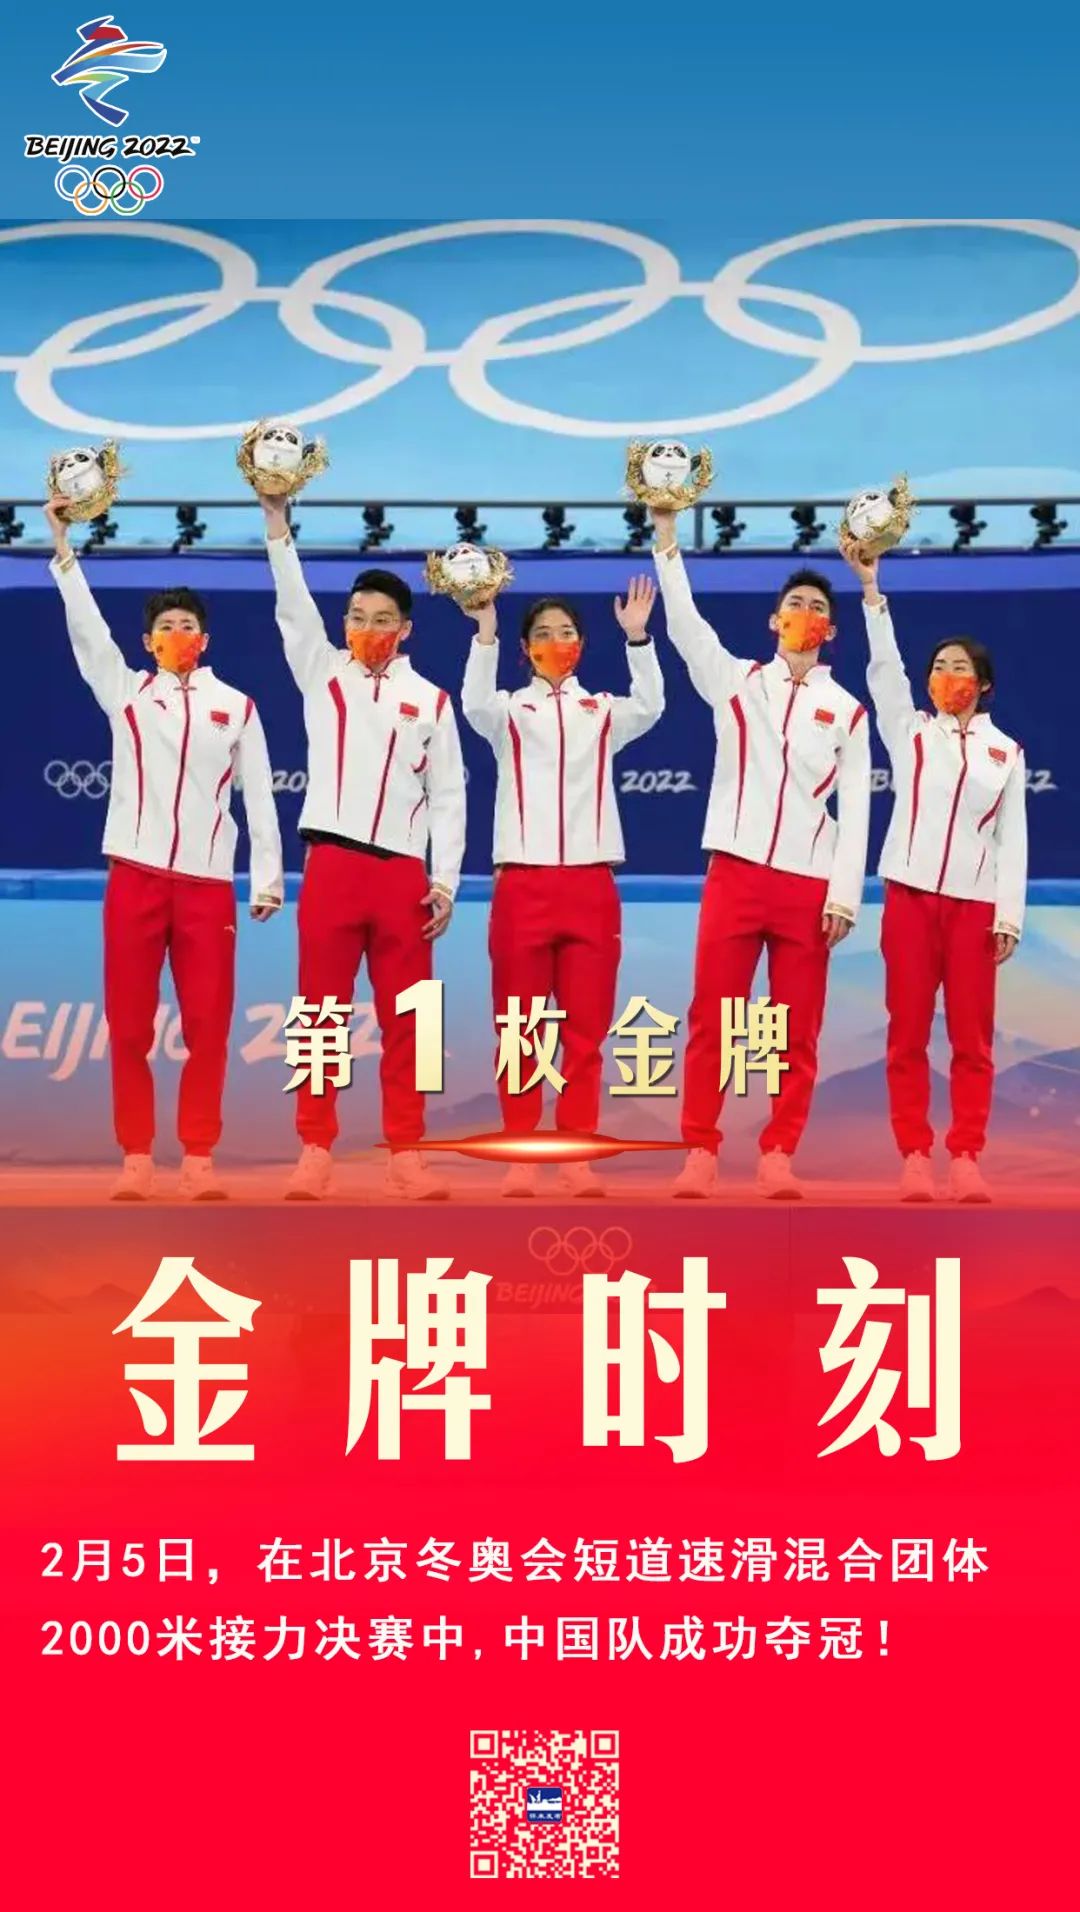 中国北京冬奥会第一金图片